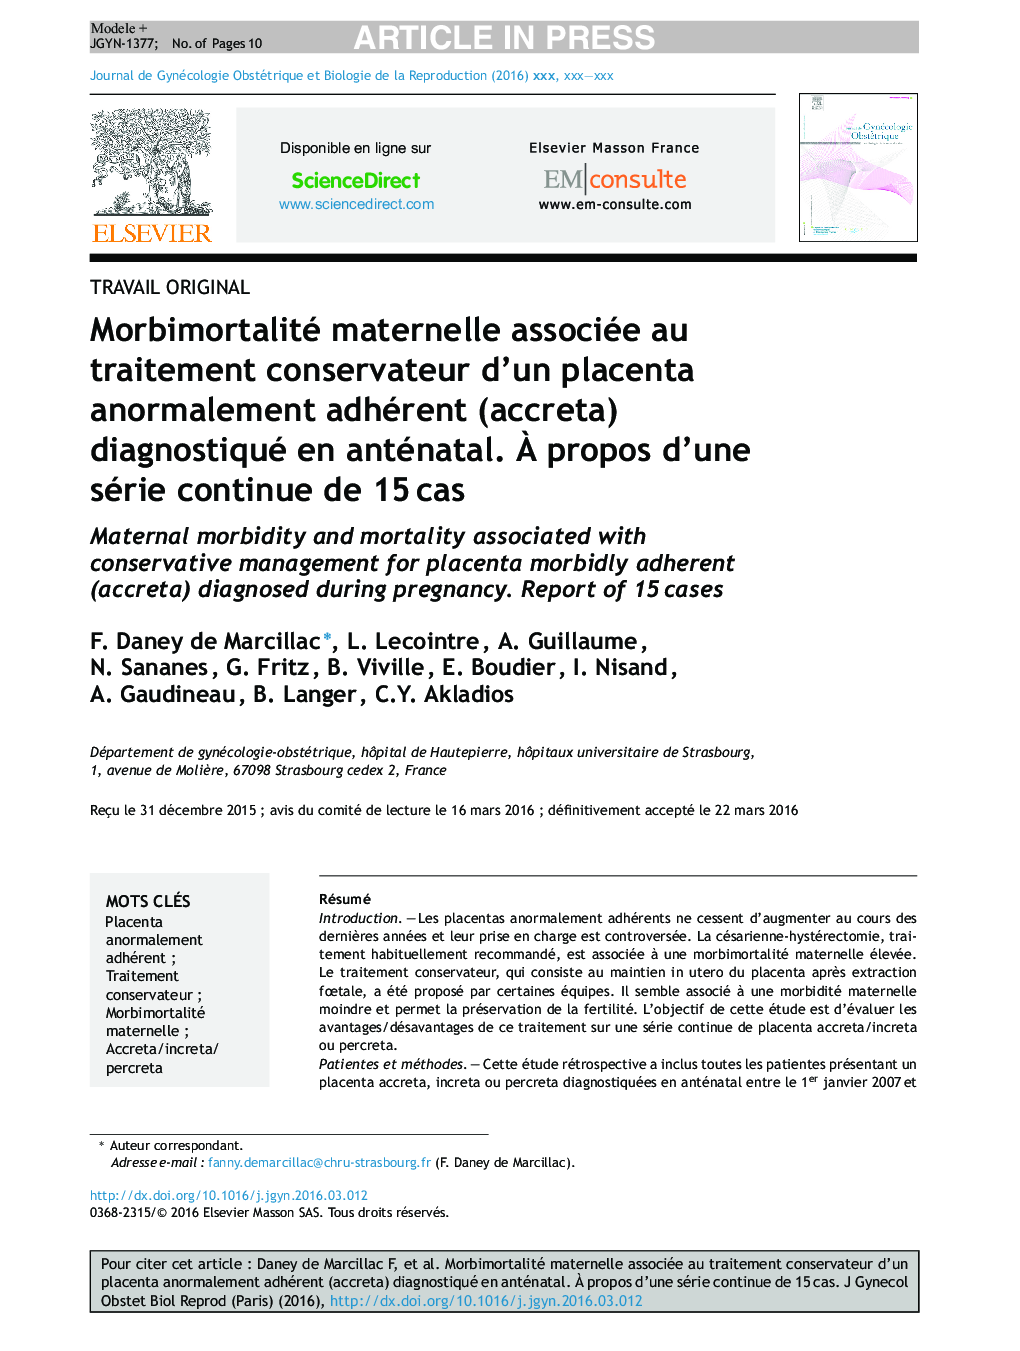 Morbimortalité maternelle associée au traitement conservateur d'un placenta anormalement adhérent (accreta) diagnostiqué en anténatal. Ã propos d'une série continue de 15Â cas